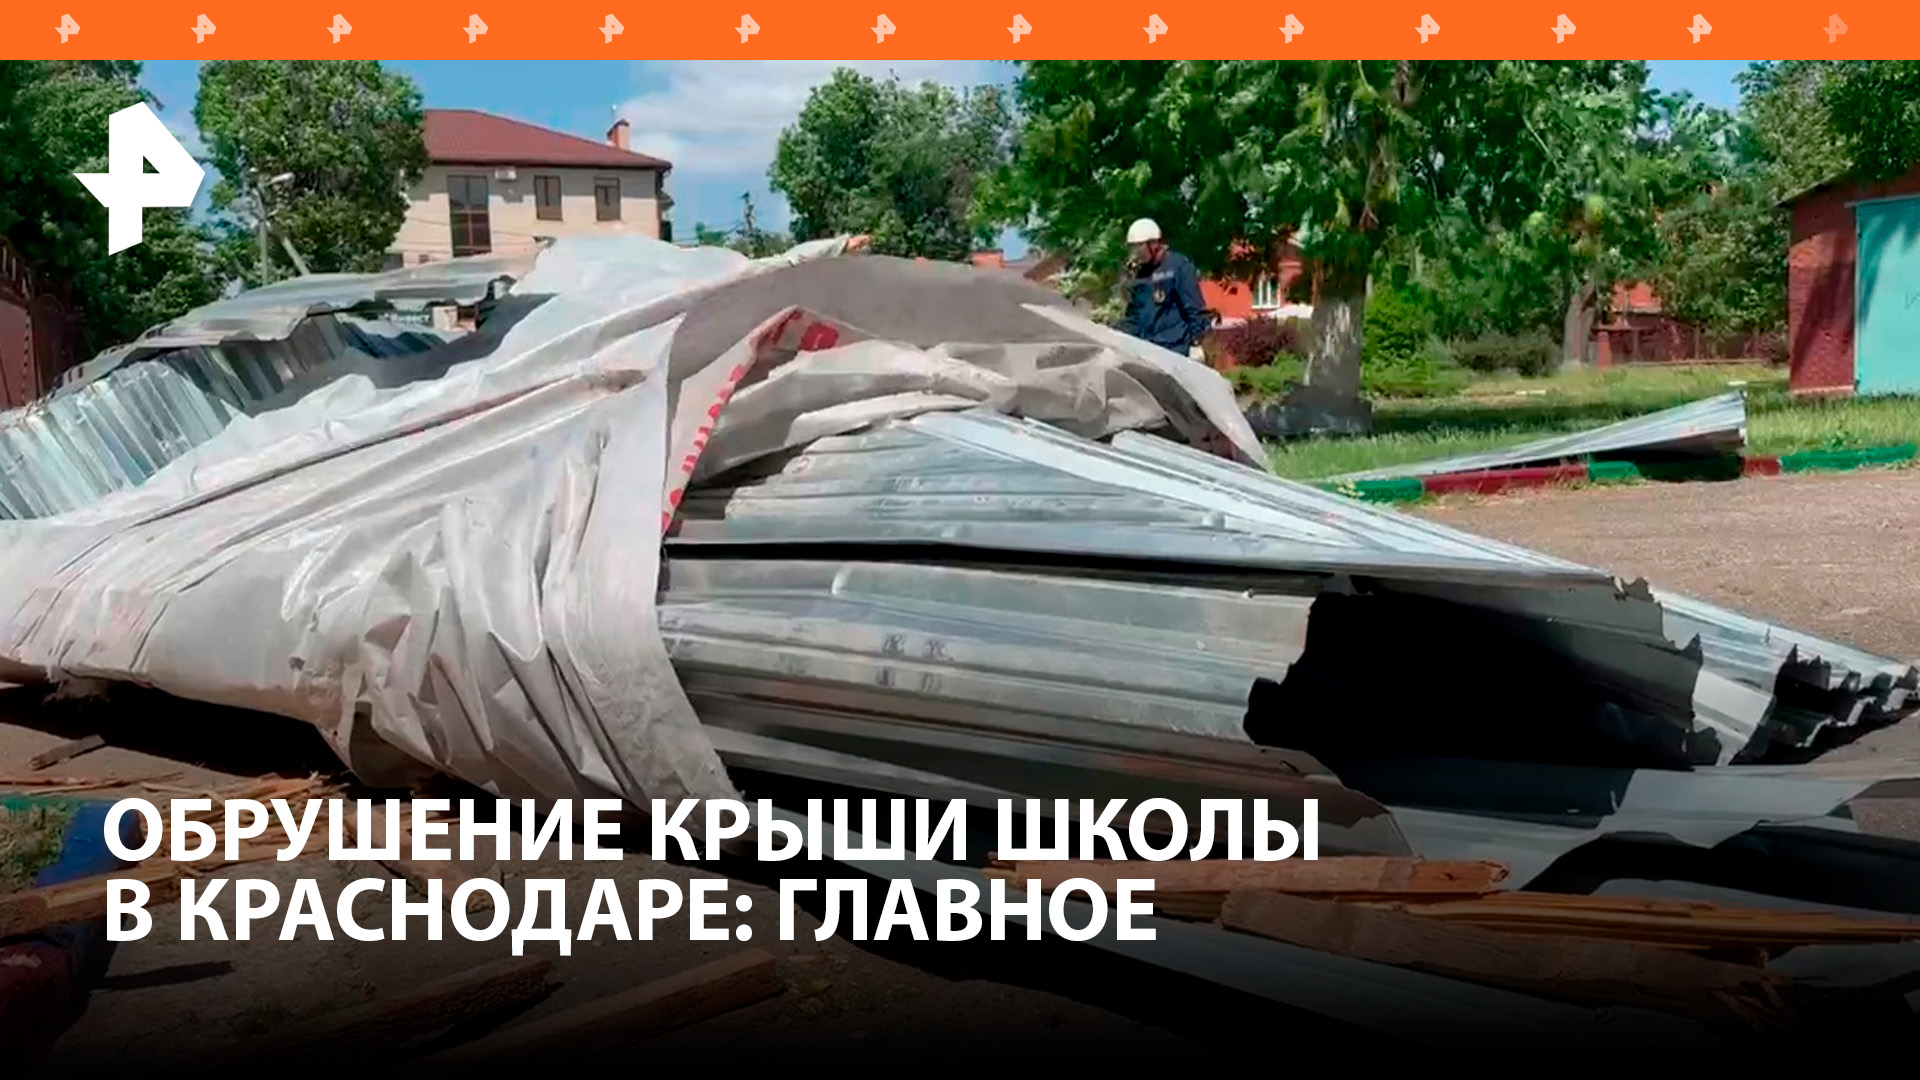 В Краснодаре 12 учеников пострадали при обрушении крыши школы / РЕН Новости